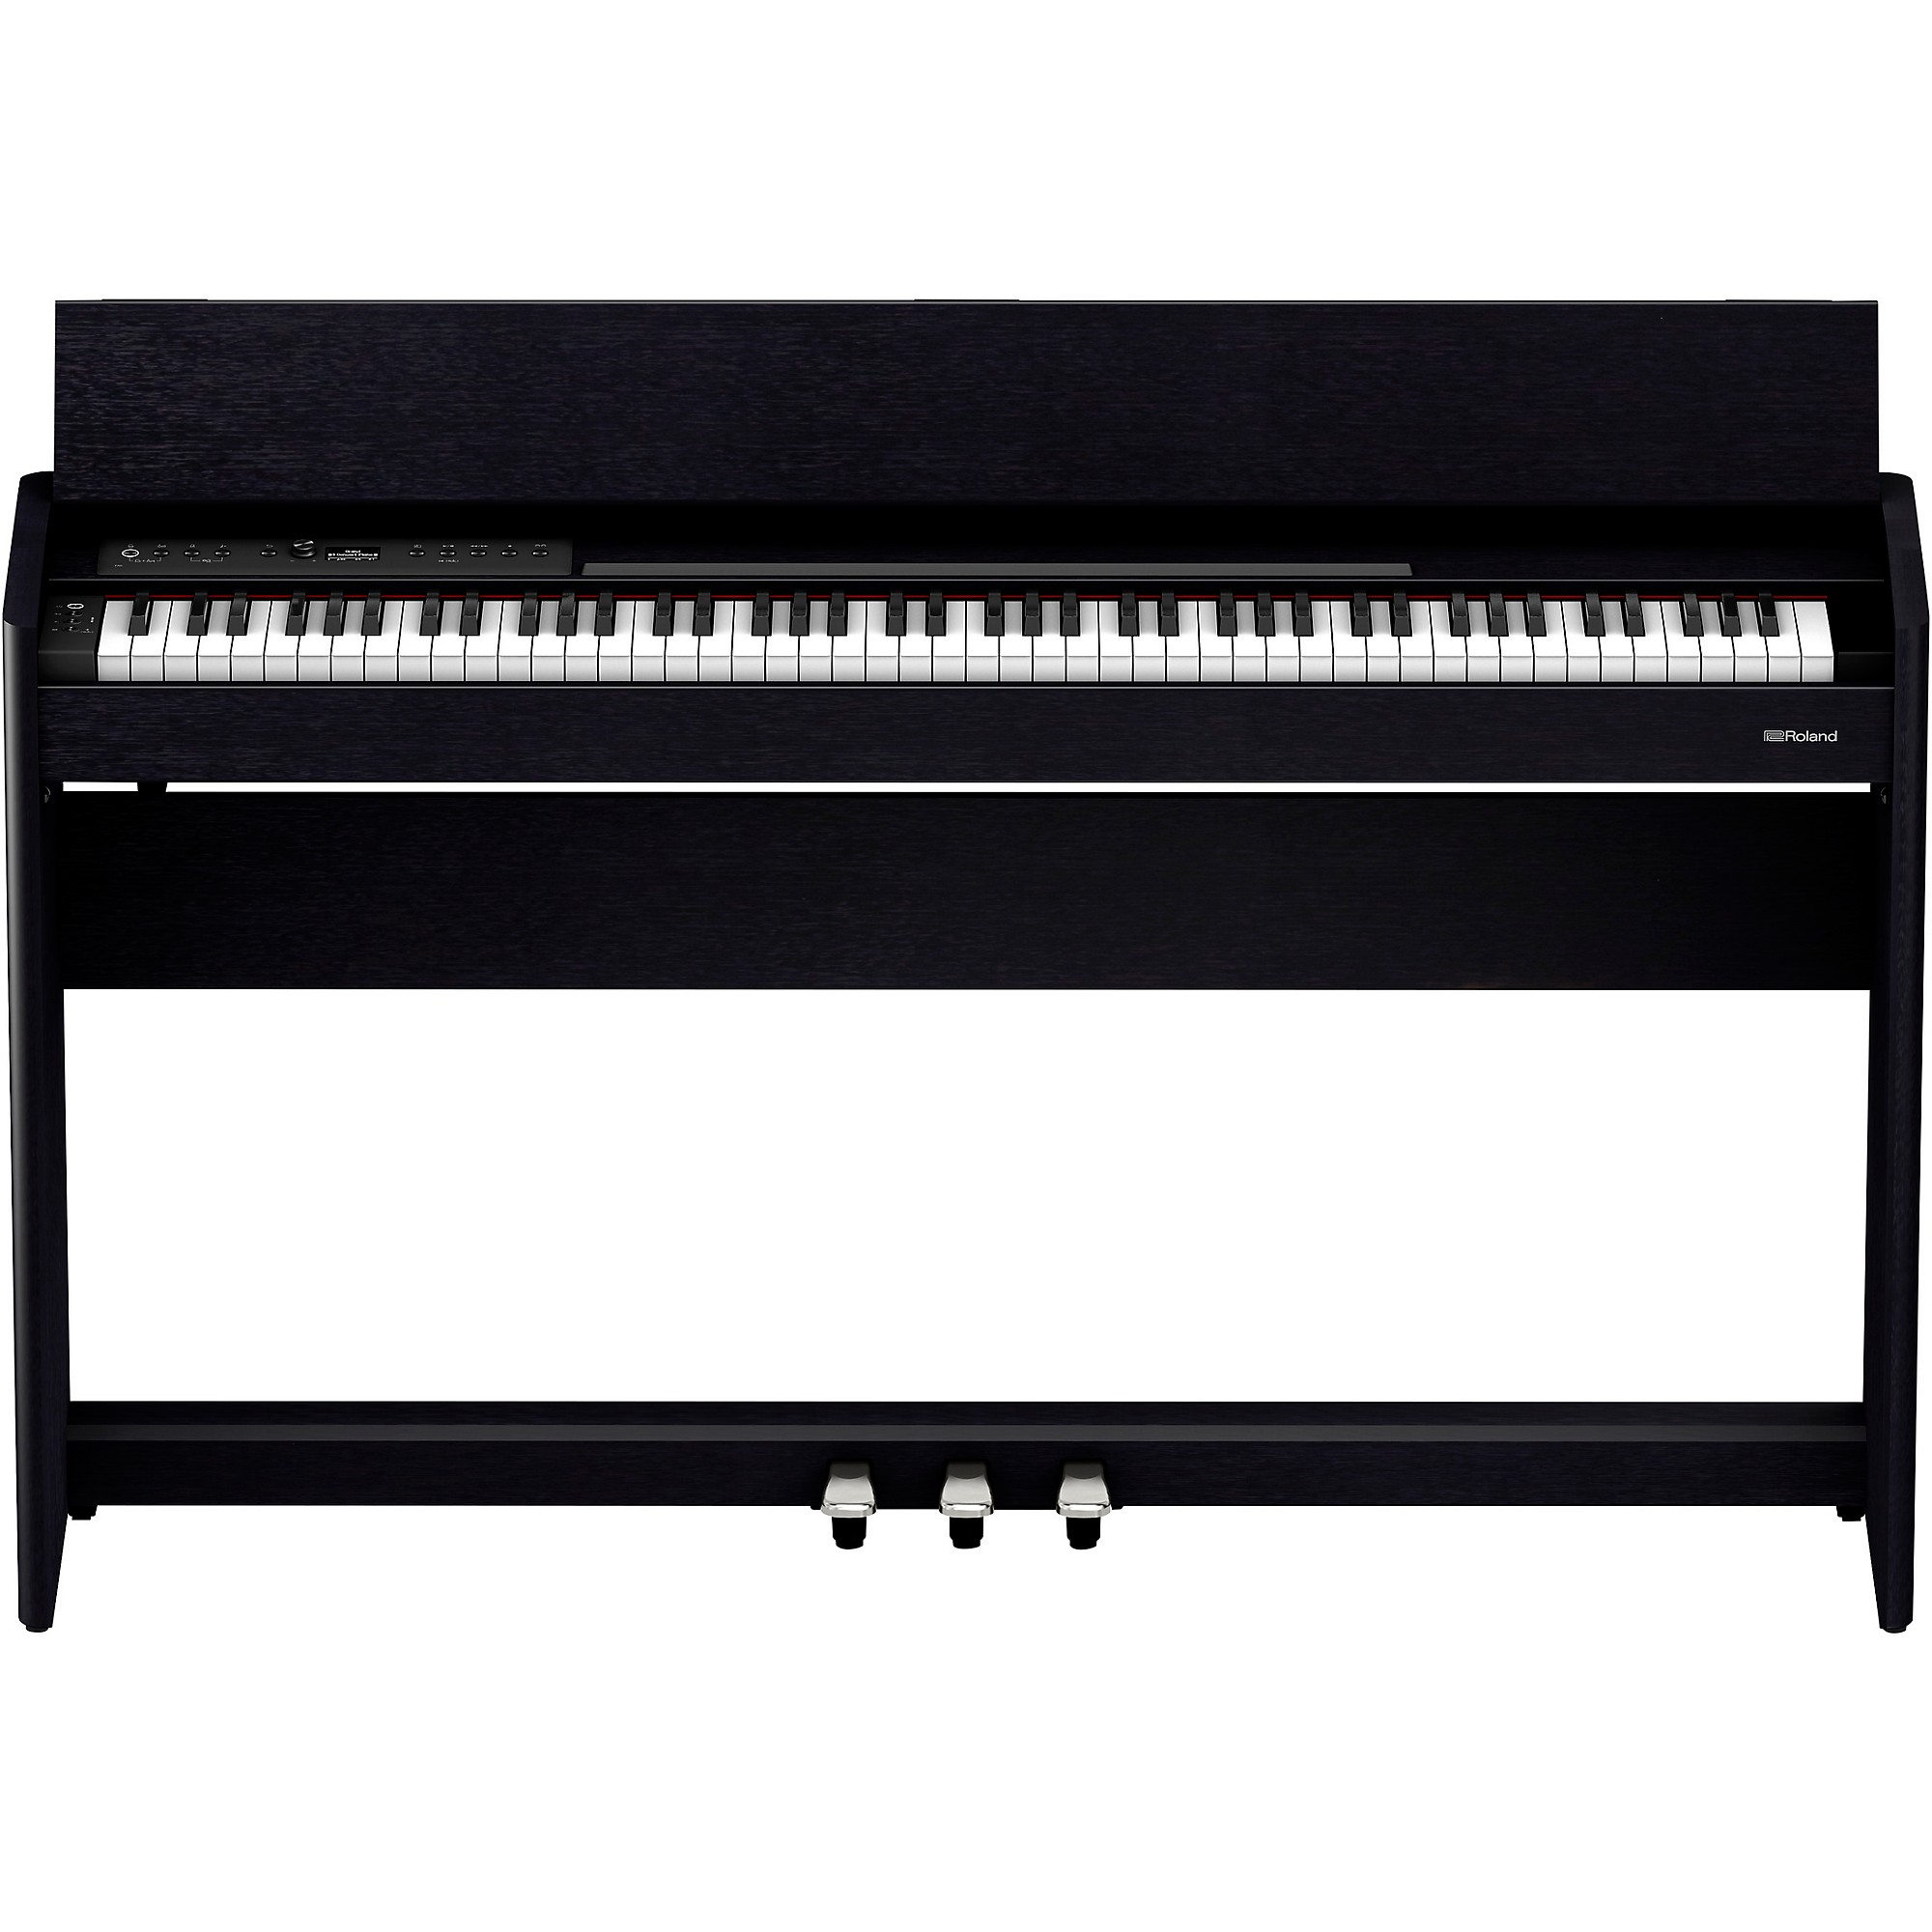 PIANO ROLAND F 701  Piano Numérique À partir de 1199 €